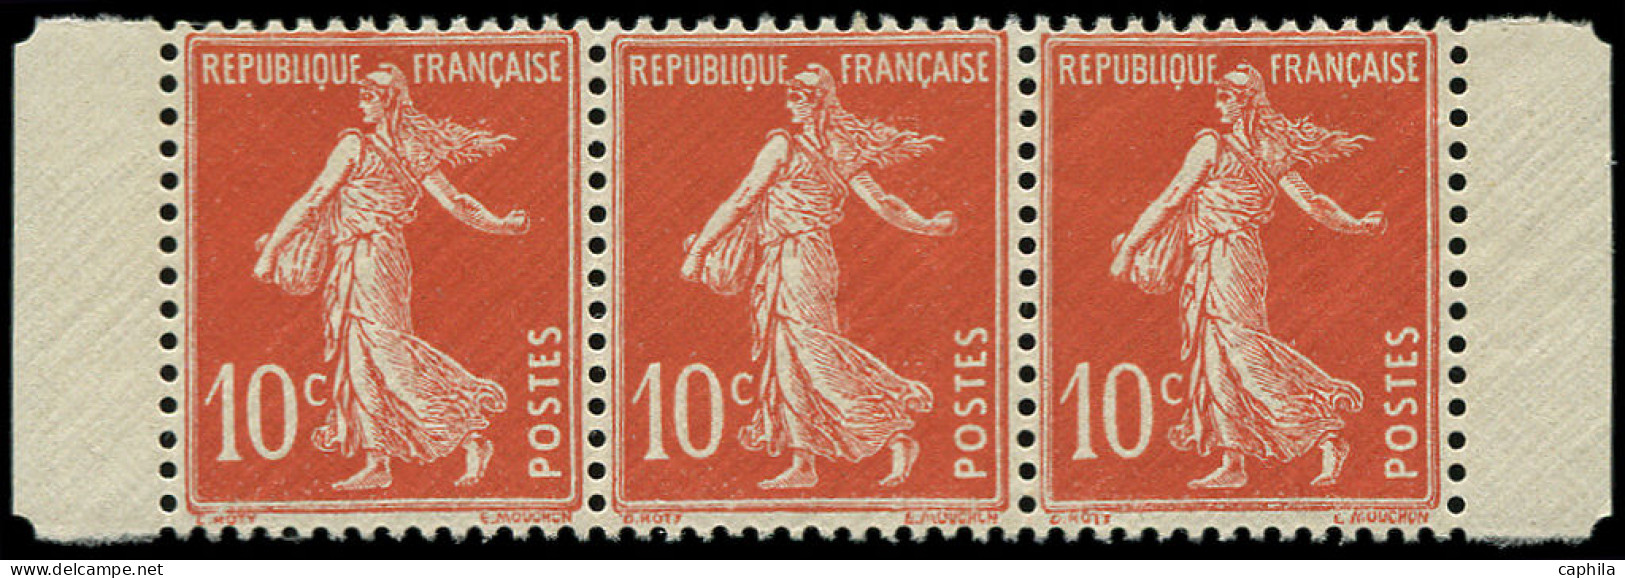 ** FRANCE - Poste - 138fa, Type II, Papier X, Bande De 3 Horizontale Avec Marges, Issus De Feuille De 144: 10c. Rouge (S - Unused Stamps